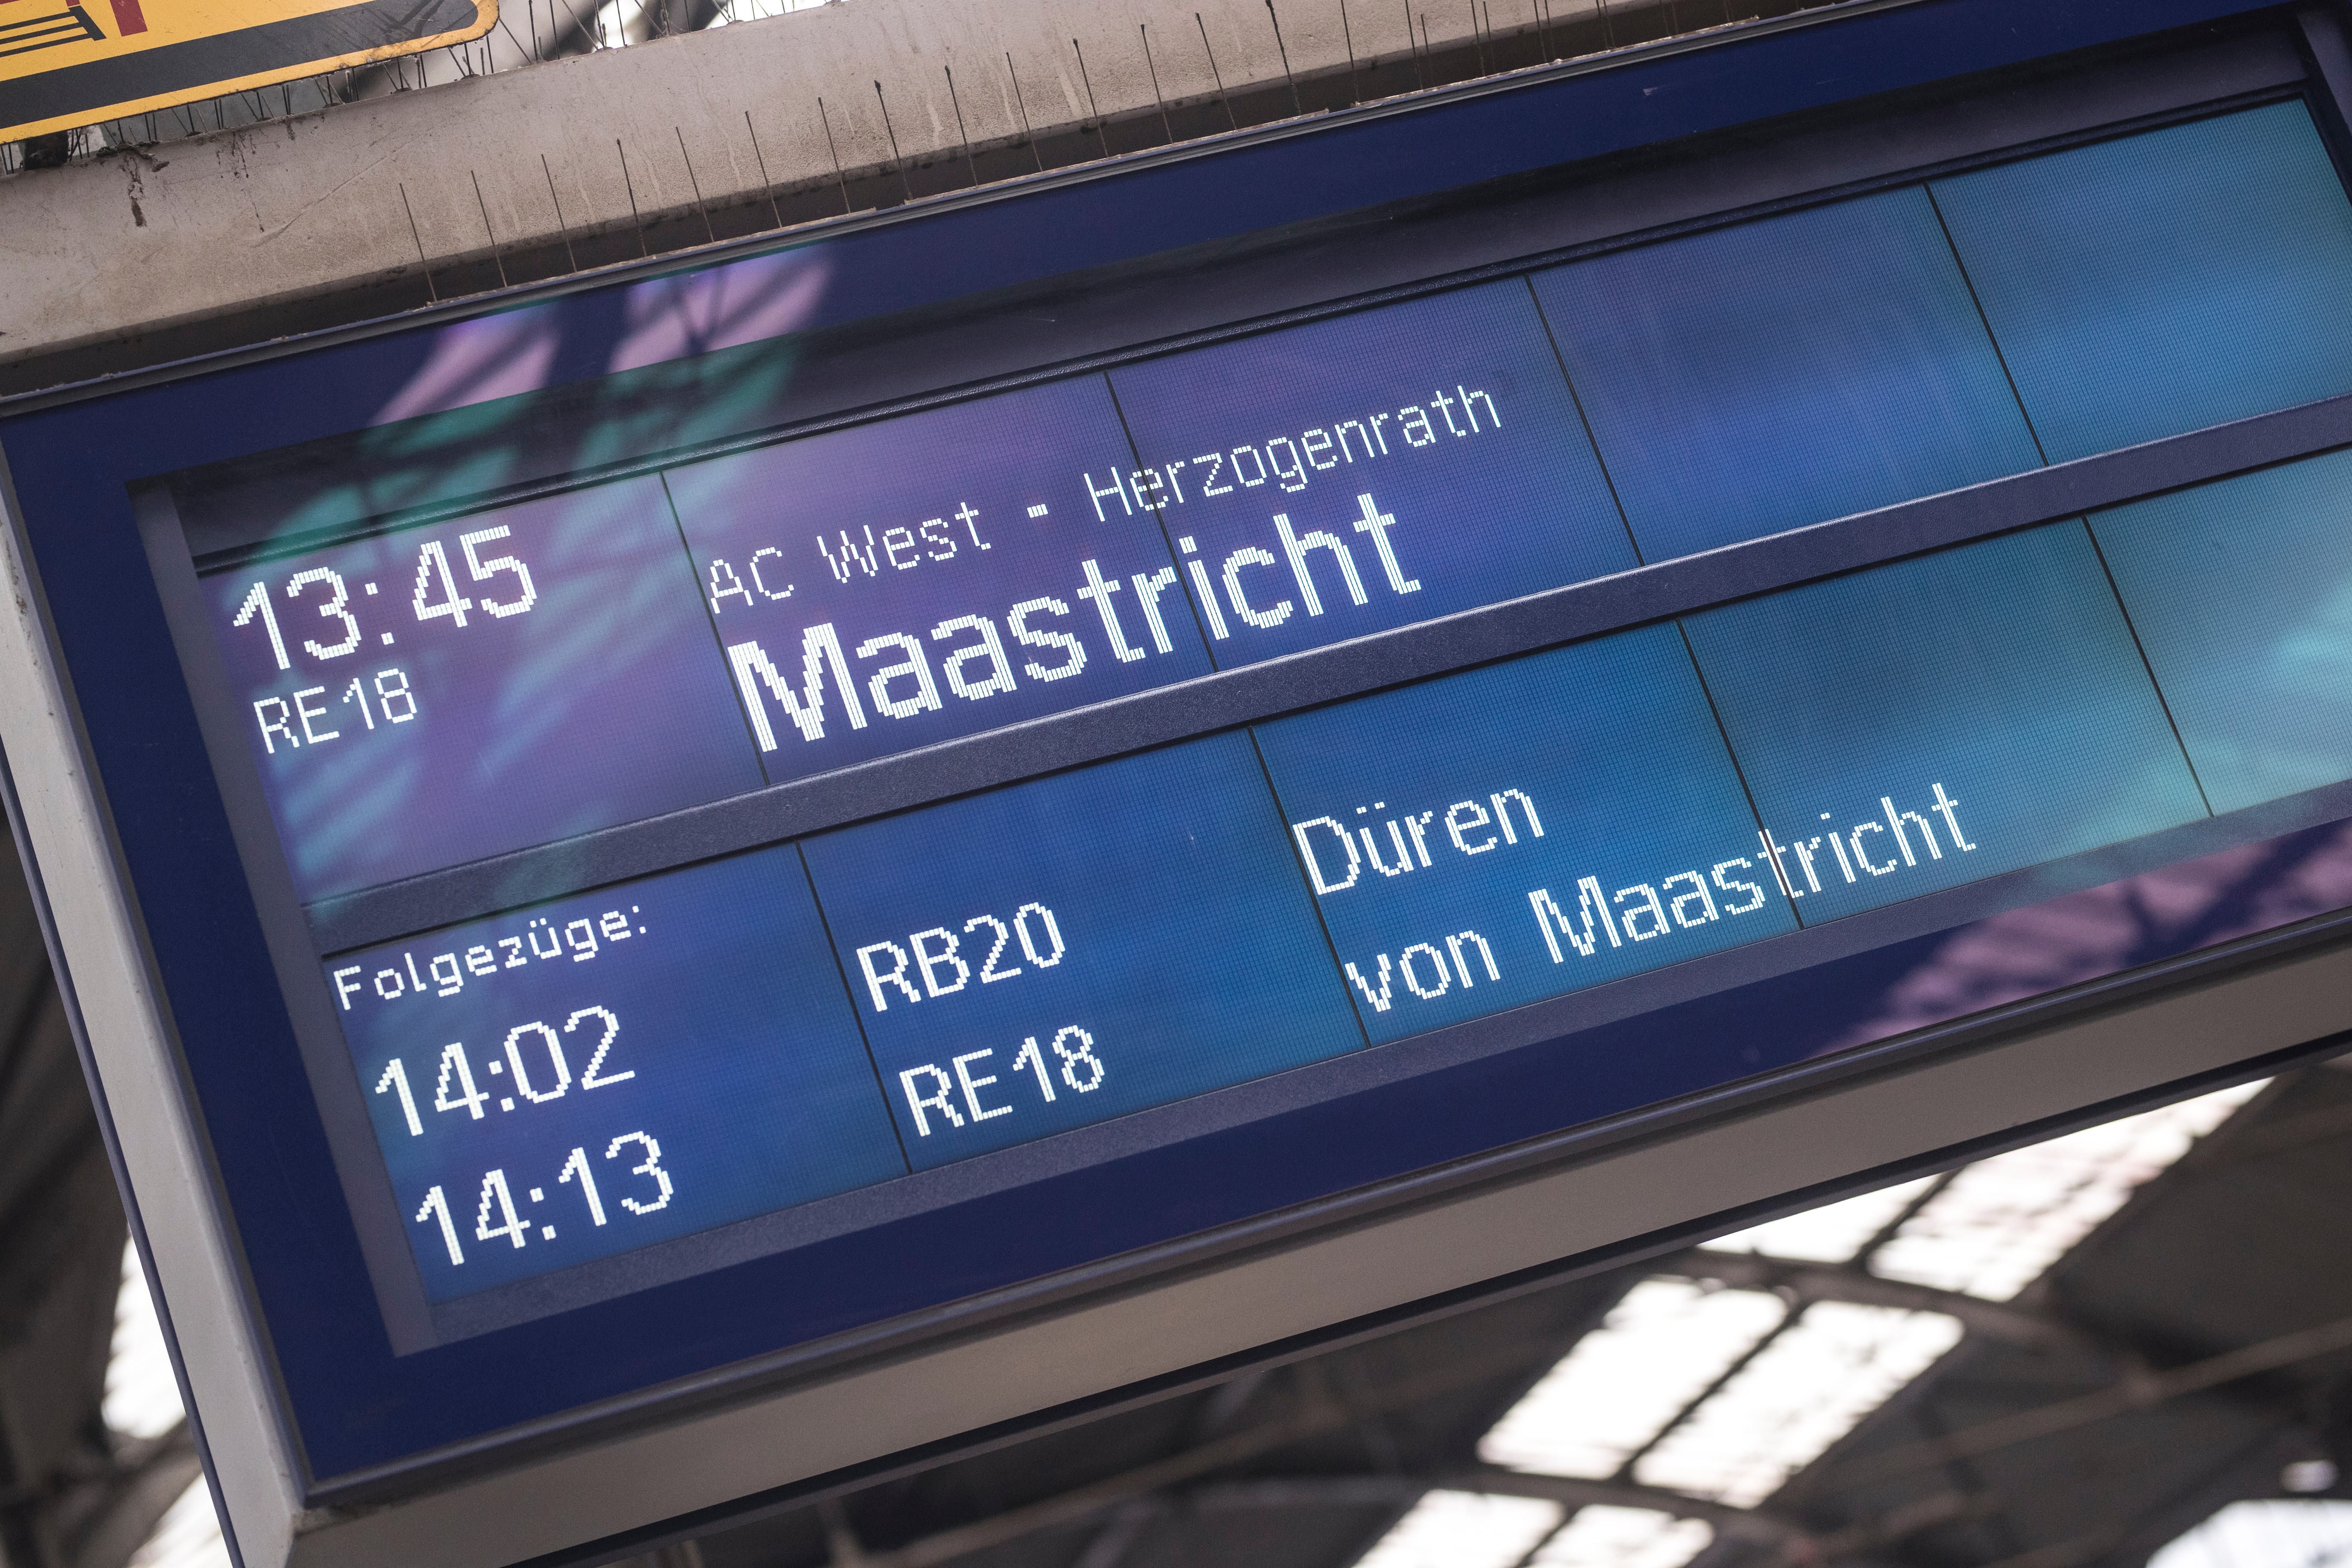 Vertrekbord op een Duits station met bestemming Maastricht en vertrek om 13.45 uur.